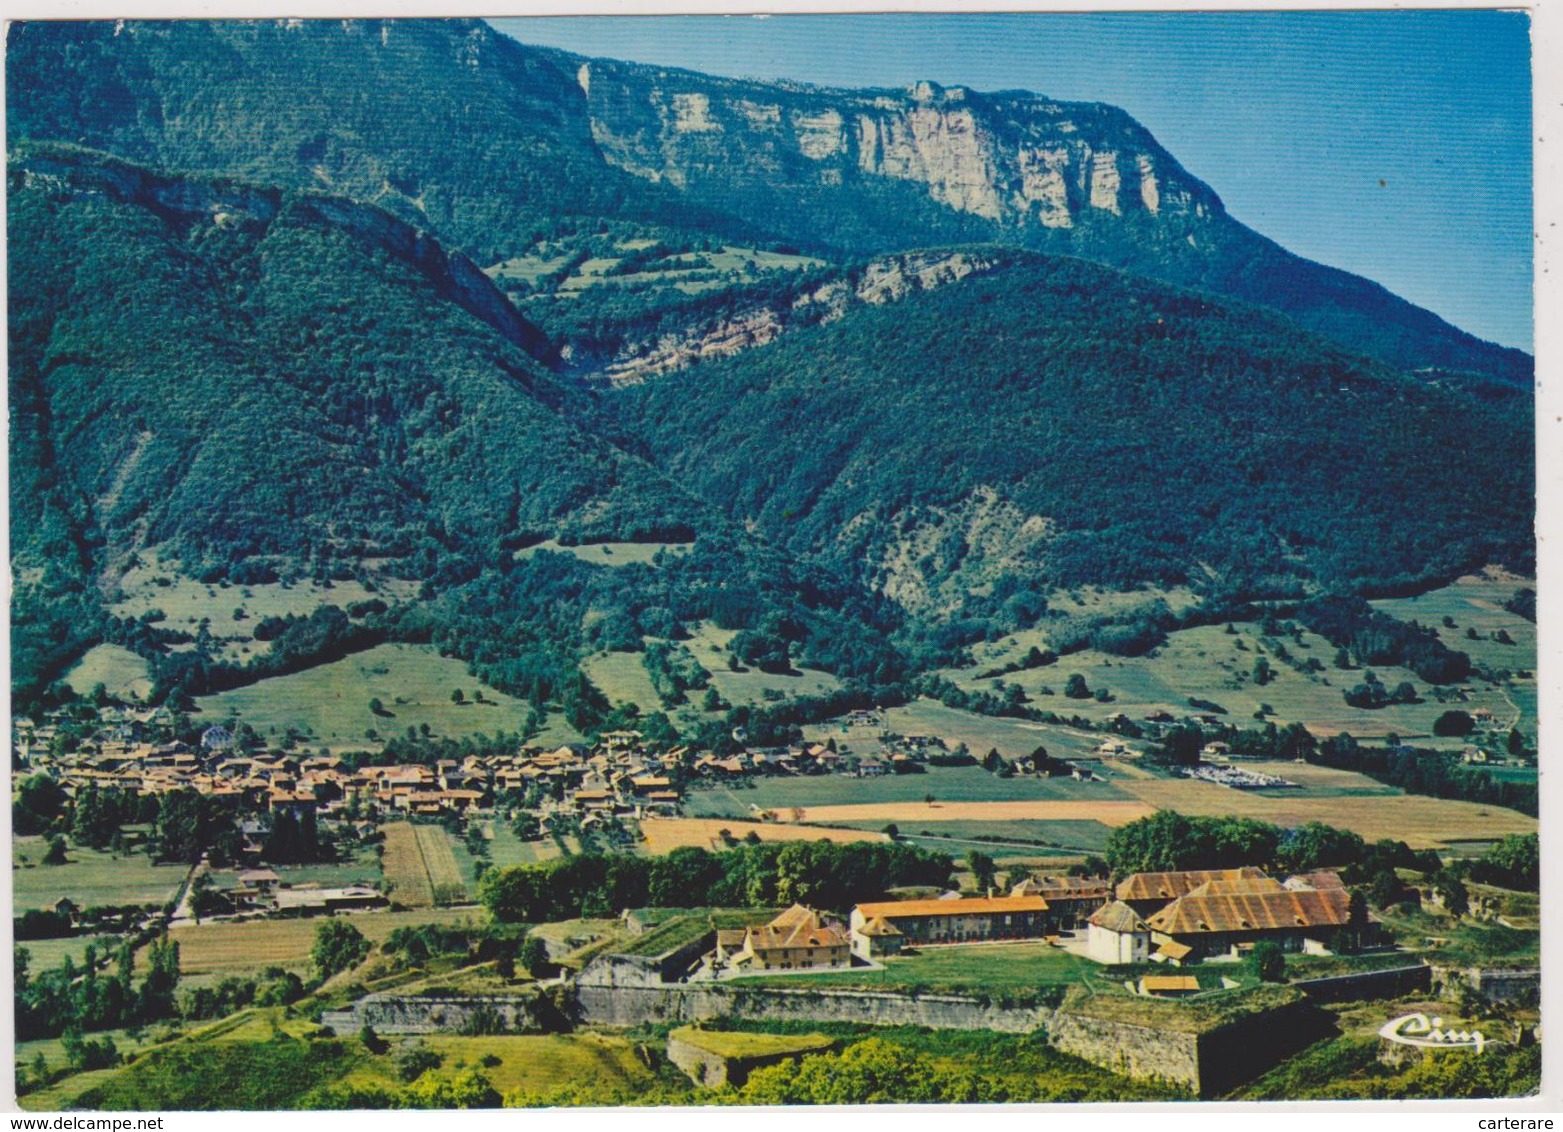 Le Fort De Barraux  En Isère,son Village,le Mont Granier 1933m Altitude,vue Aérienne Classé Laurié D'or De Qualité,rare - Barraux